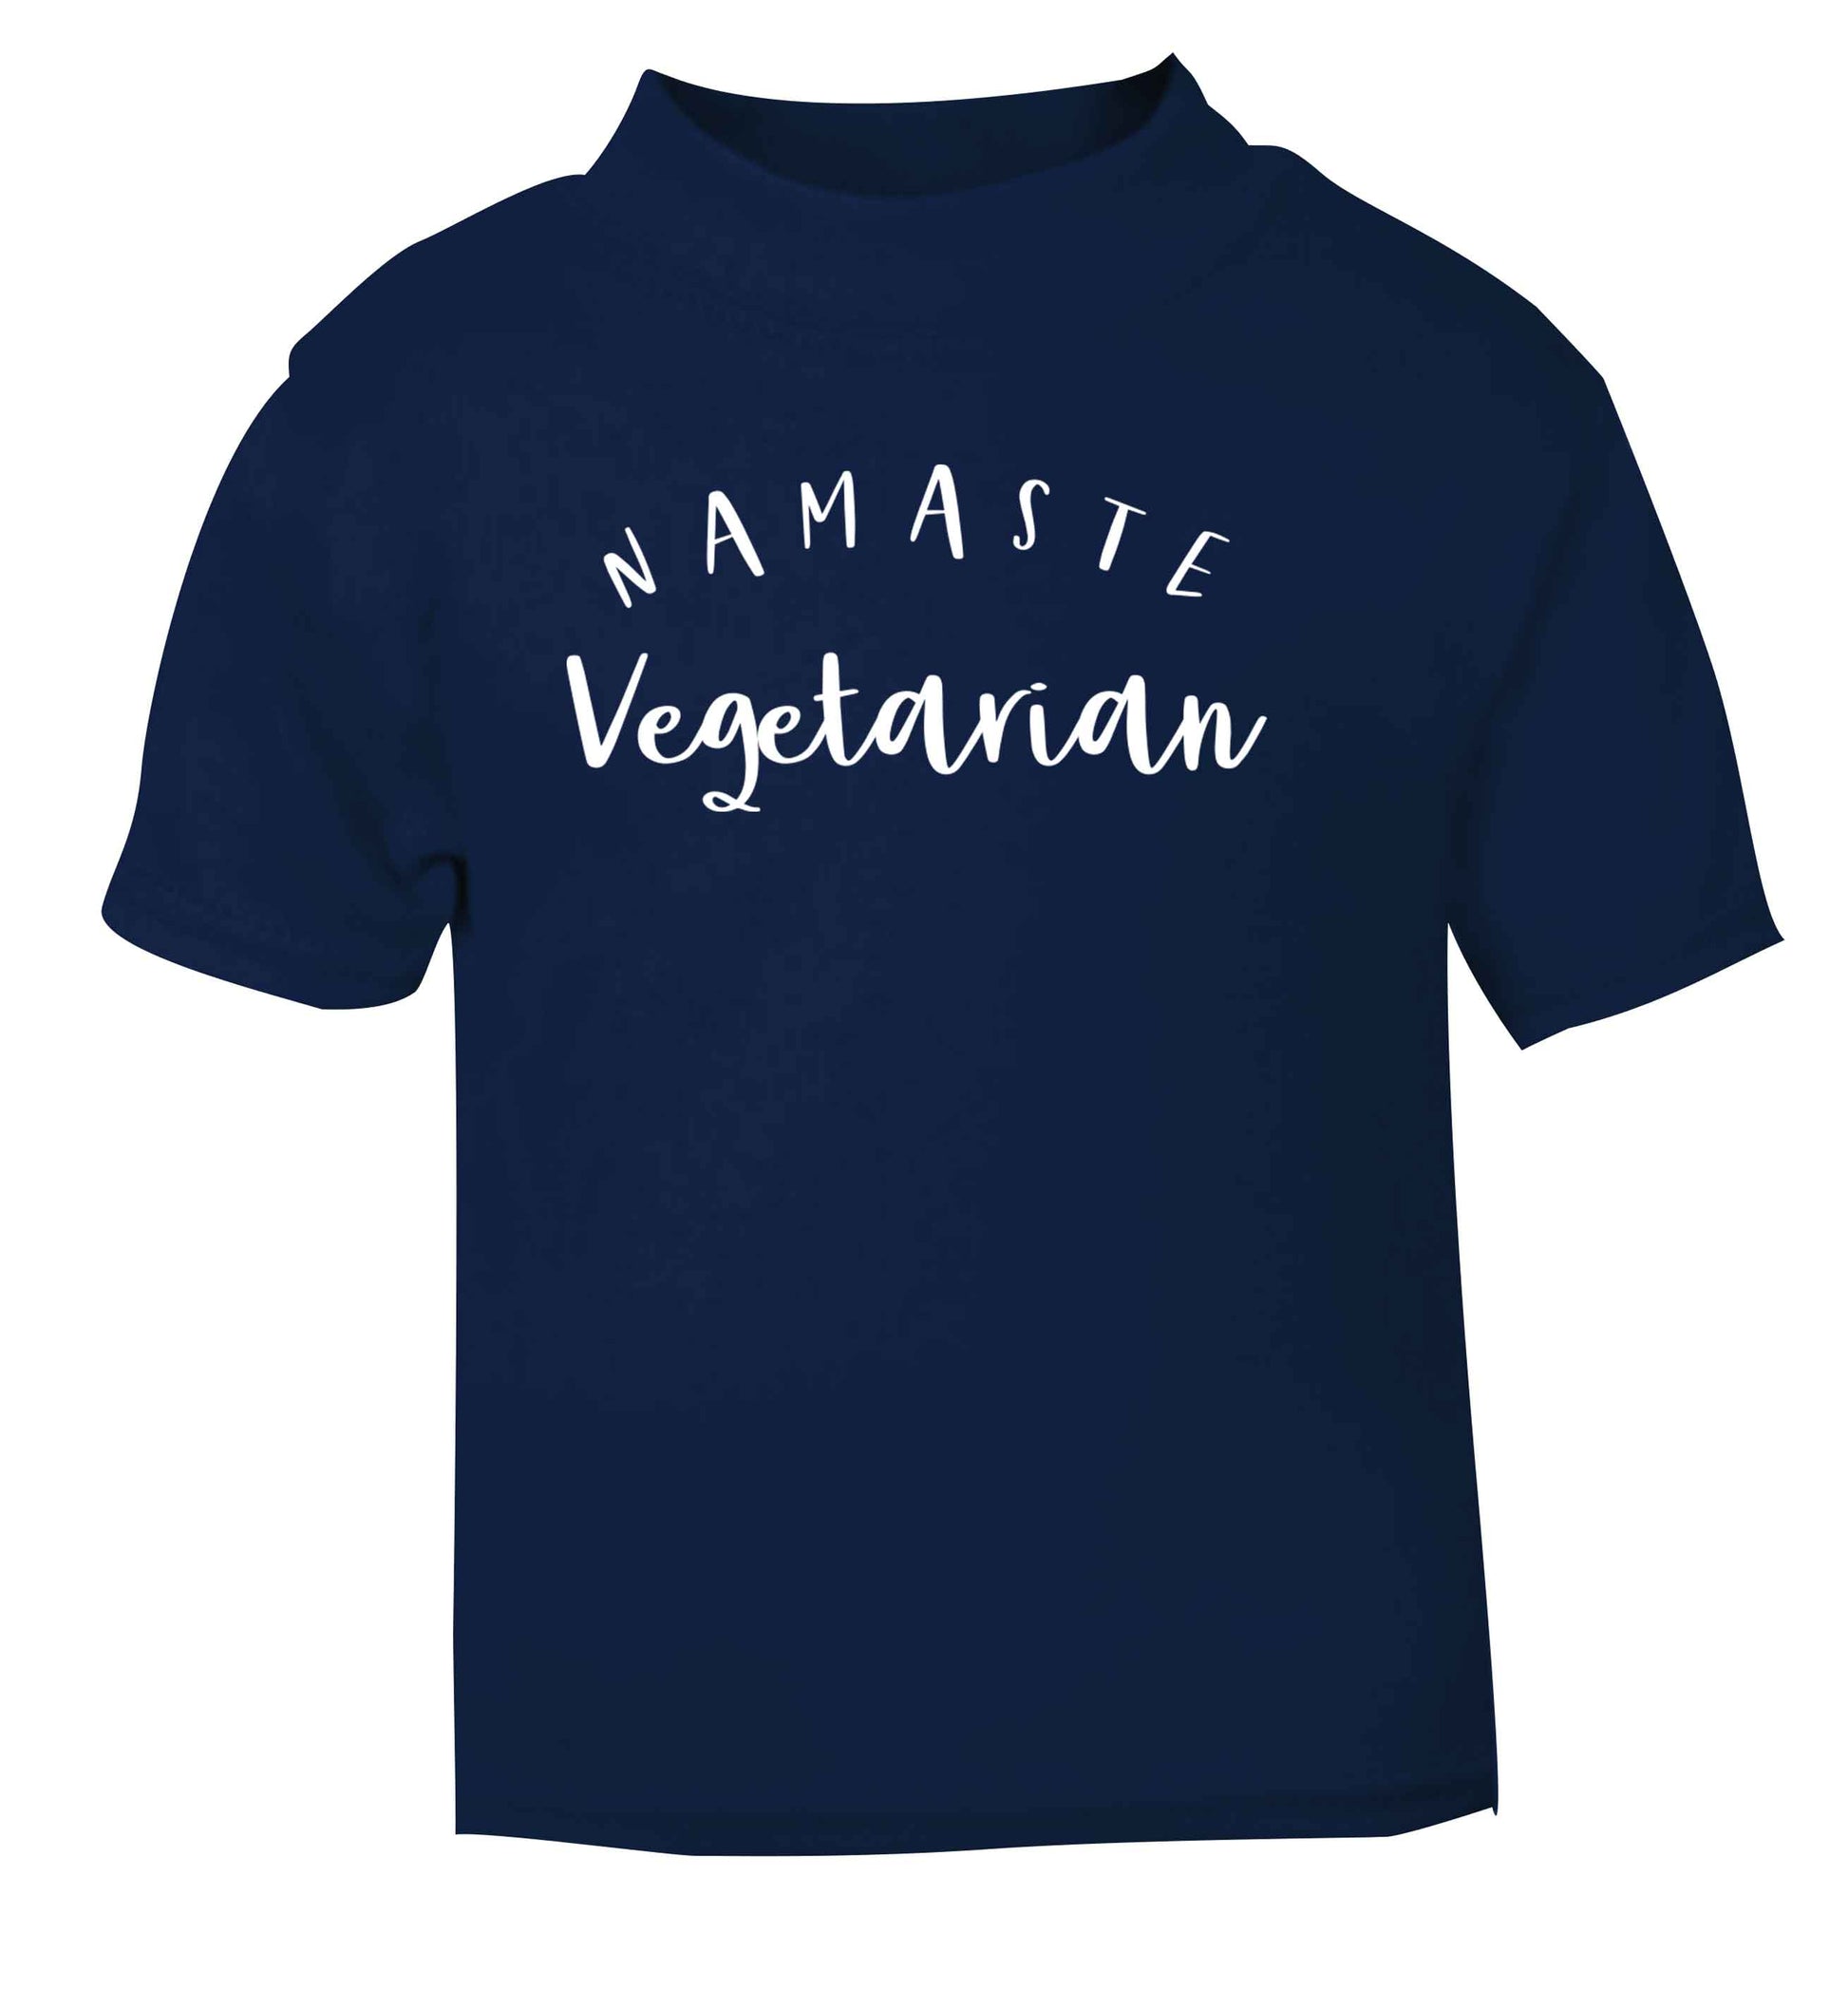 Namaste vegetarian navy Baby Toddler Tshirt 2 Years